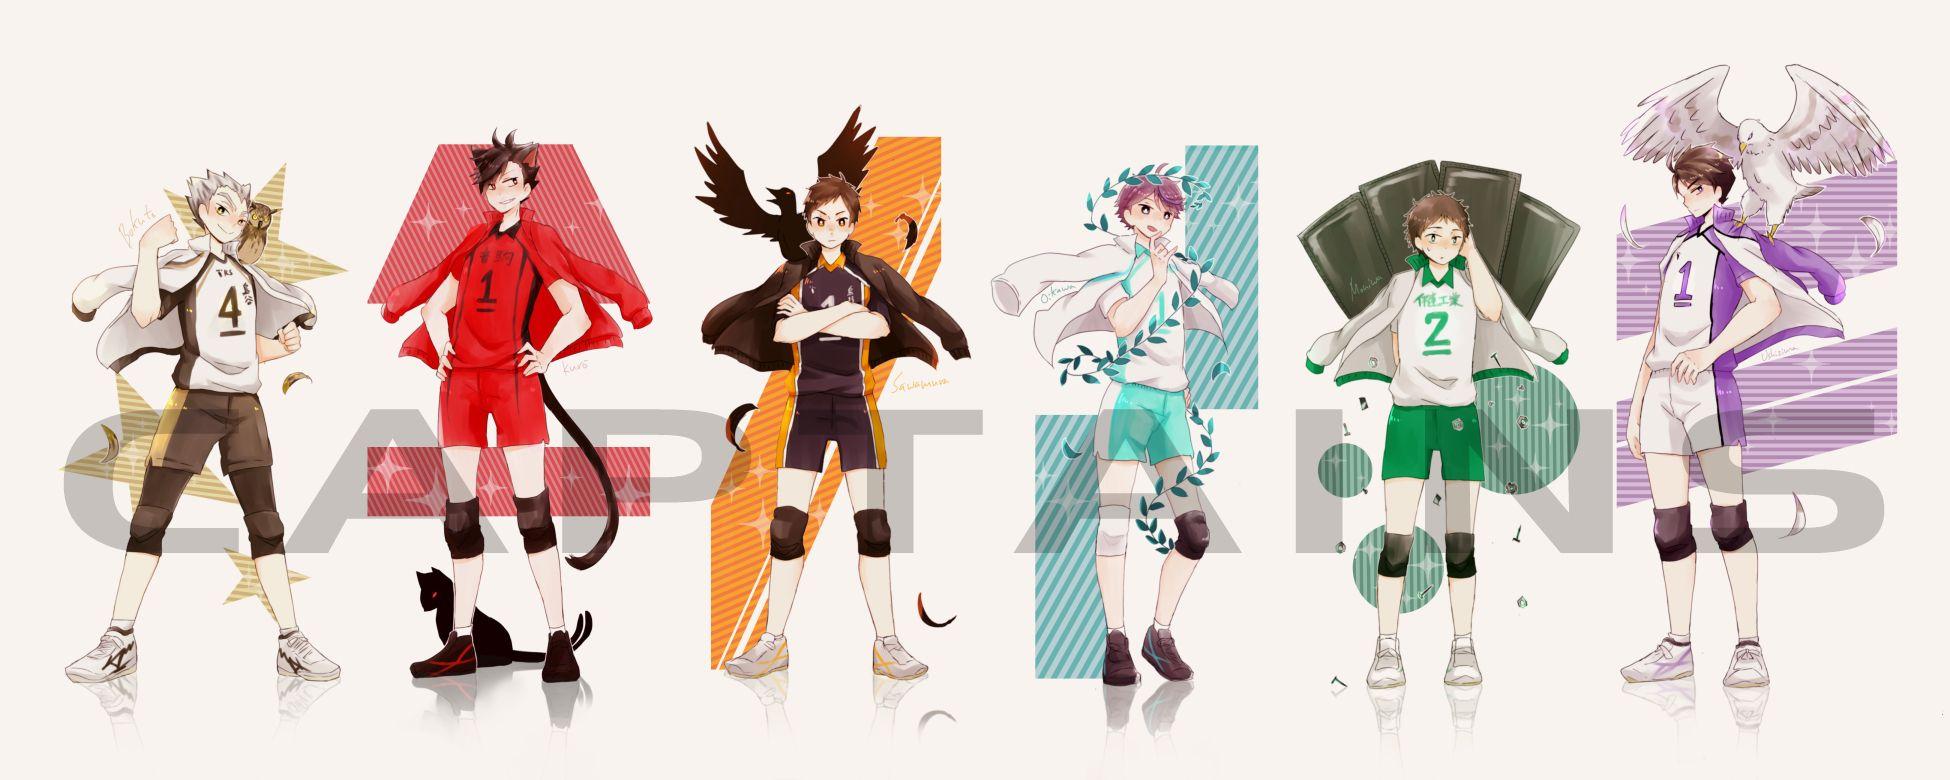 Volleyball Uniform (Shiratorizawa Academy) Anime Image Board